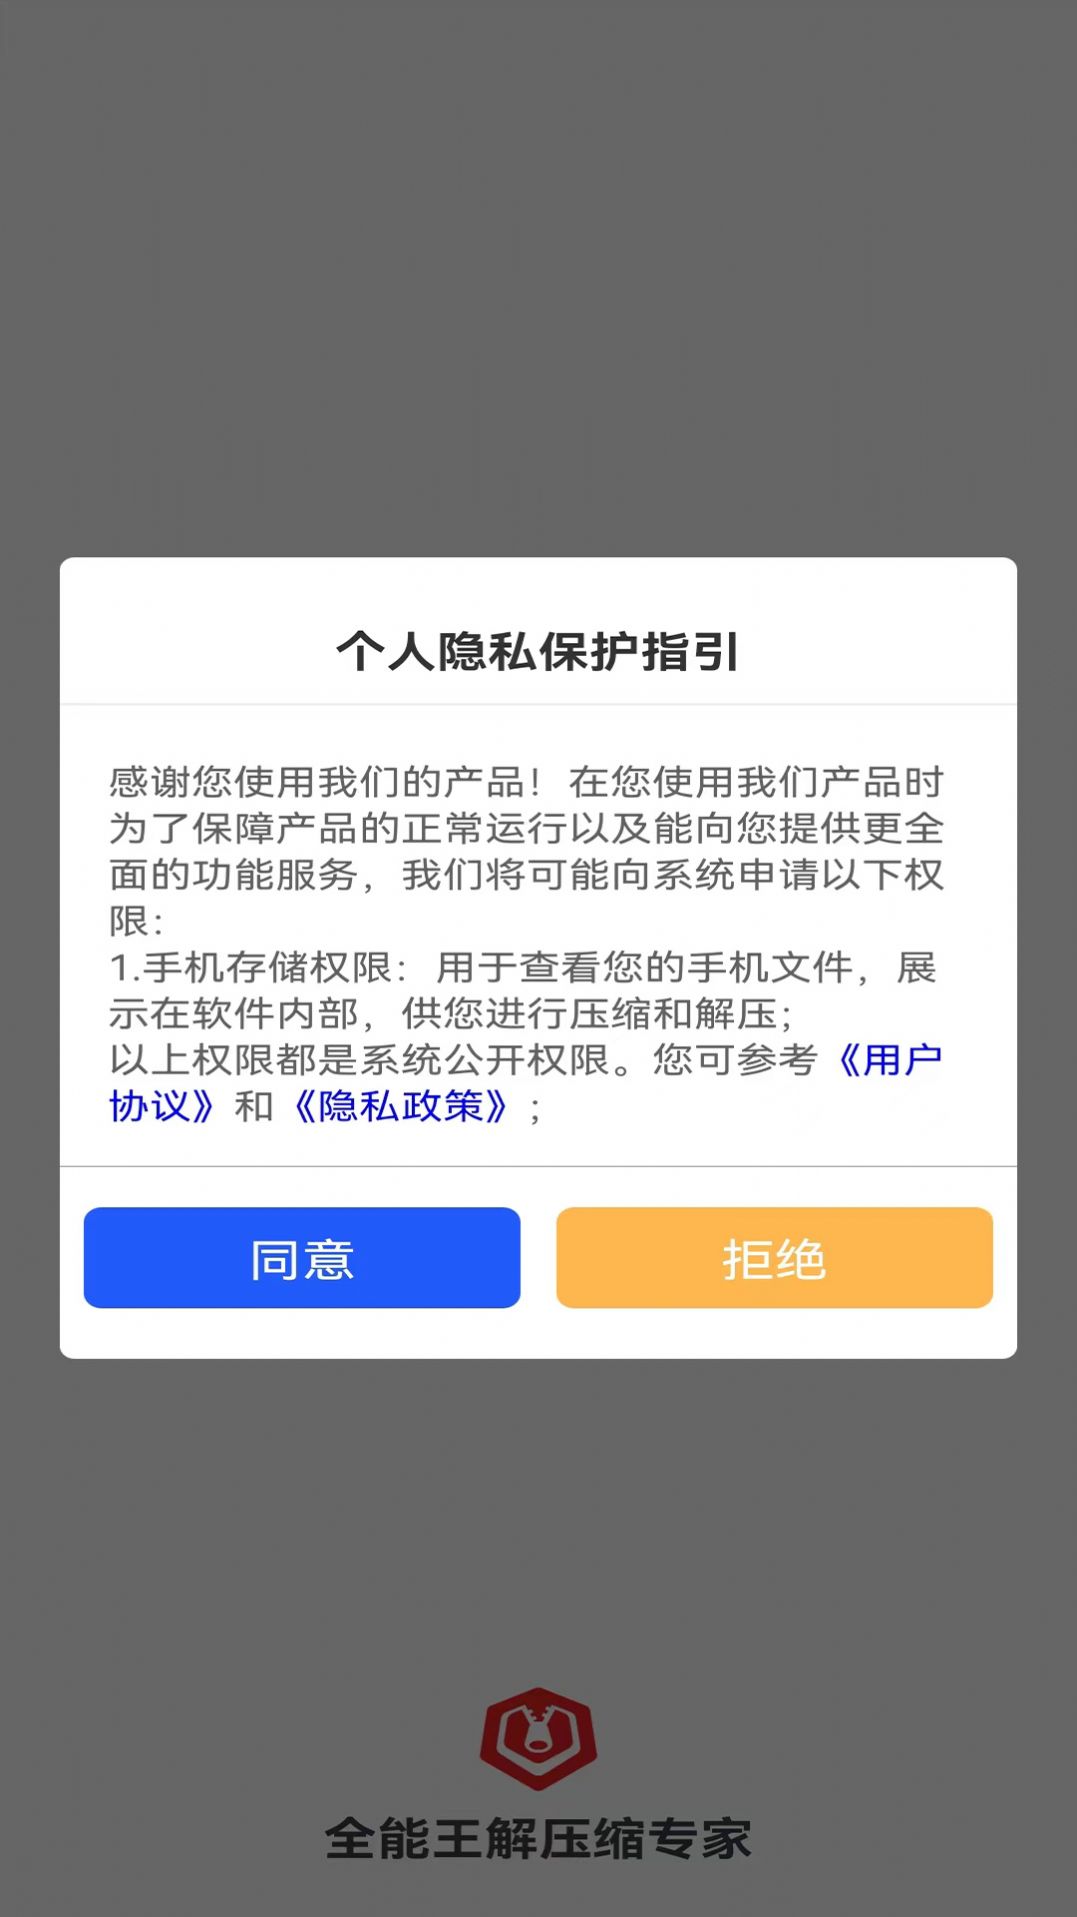 全能王解压缩专家app安卓版下载 v1.0